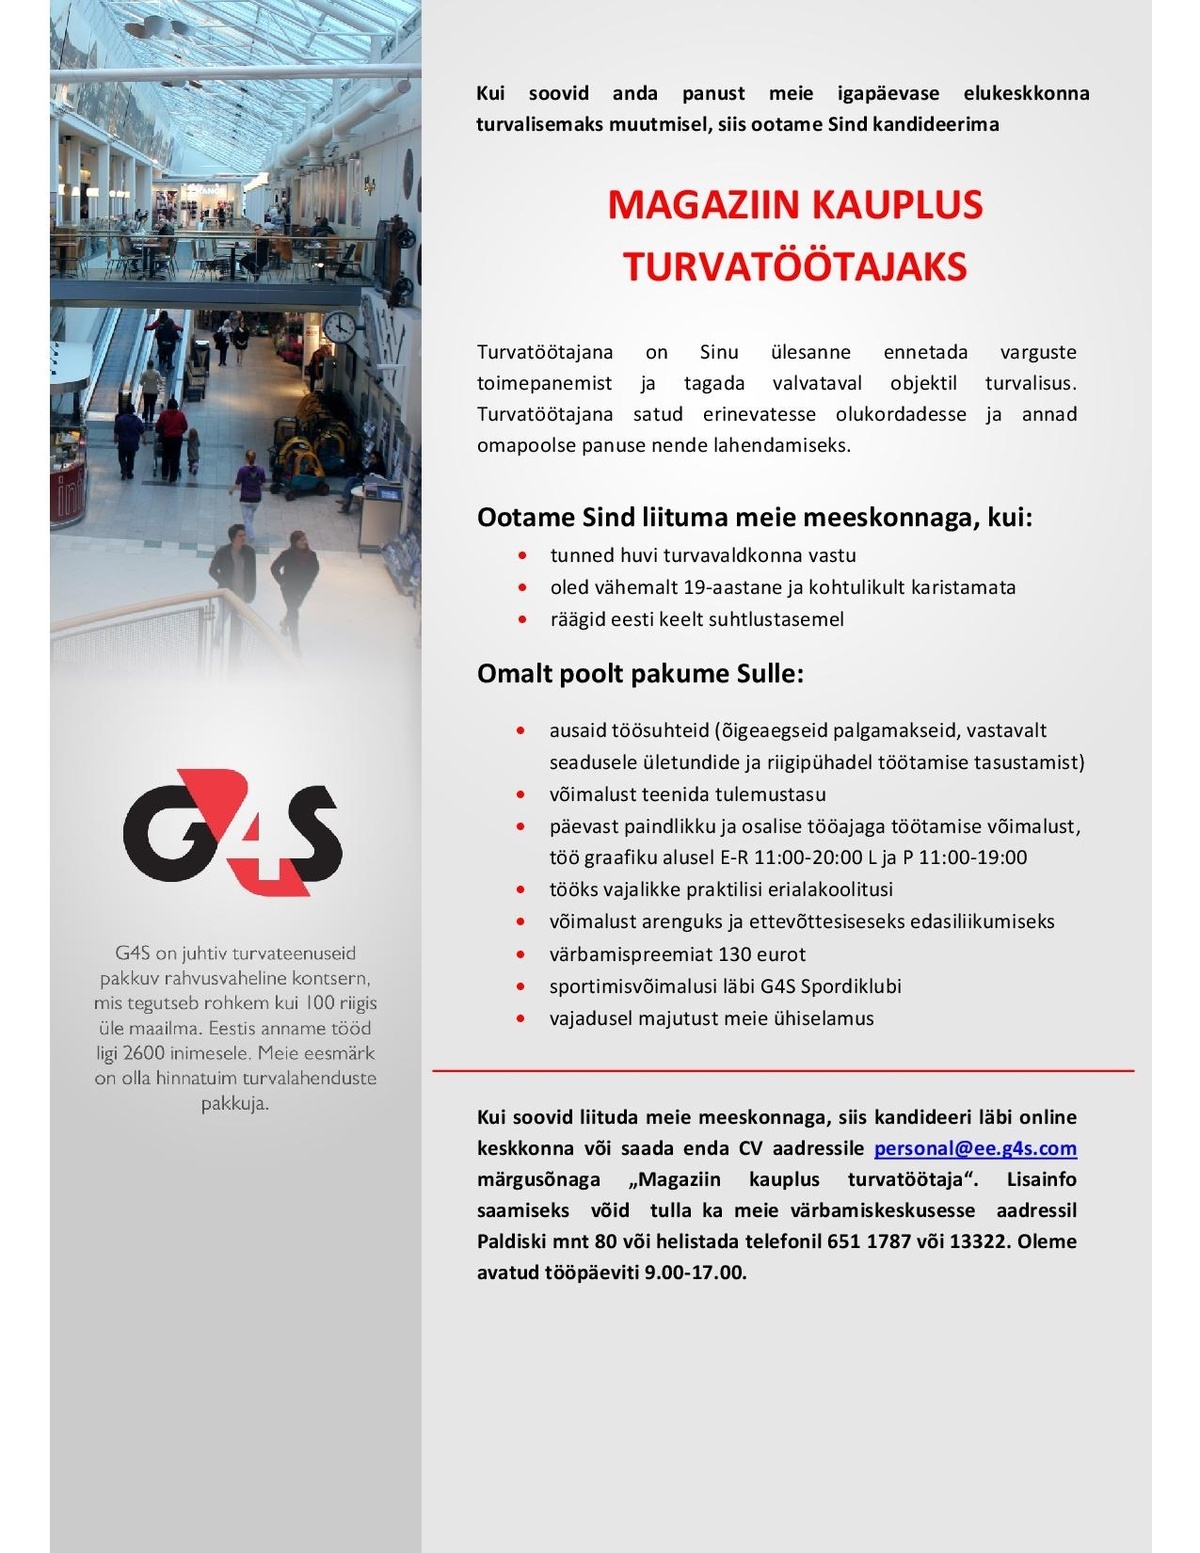 AS G4S Eesti Magaziin kaupluse turvatöötaja